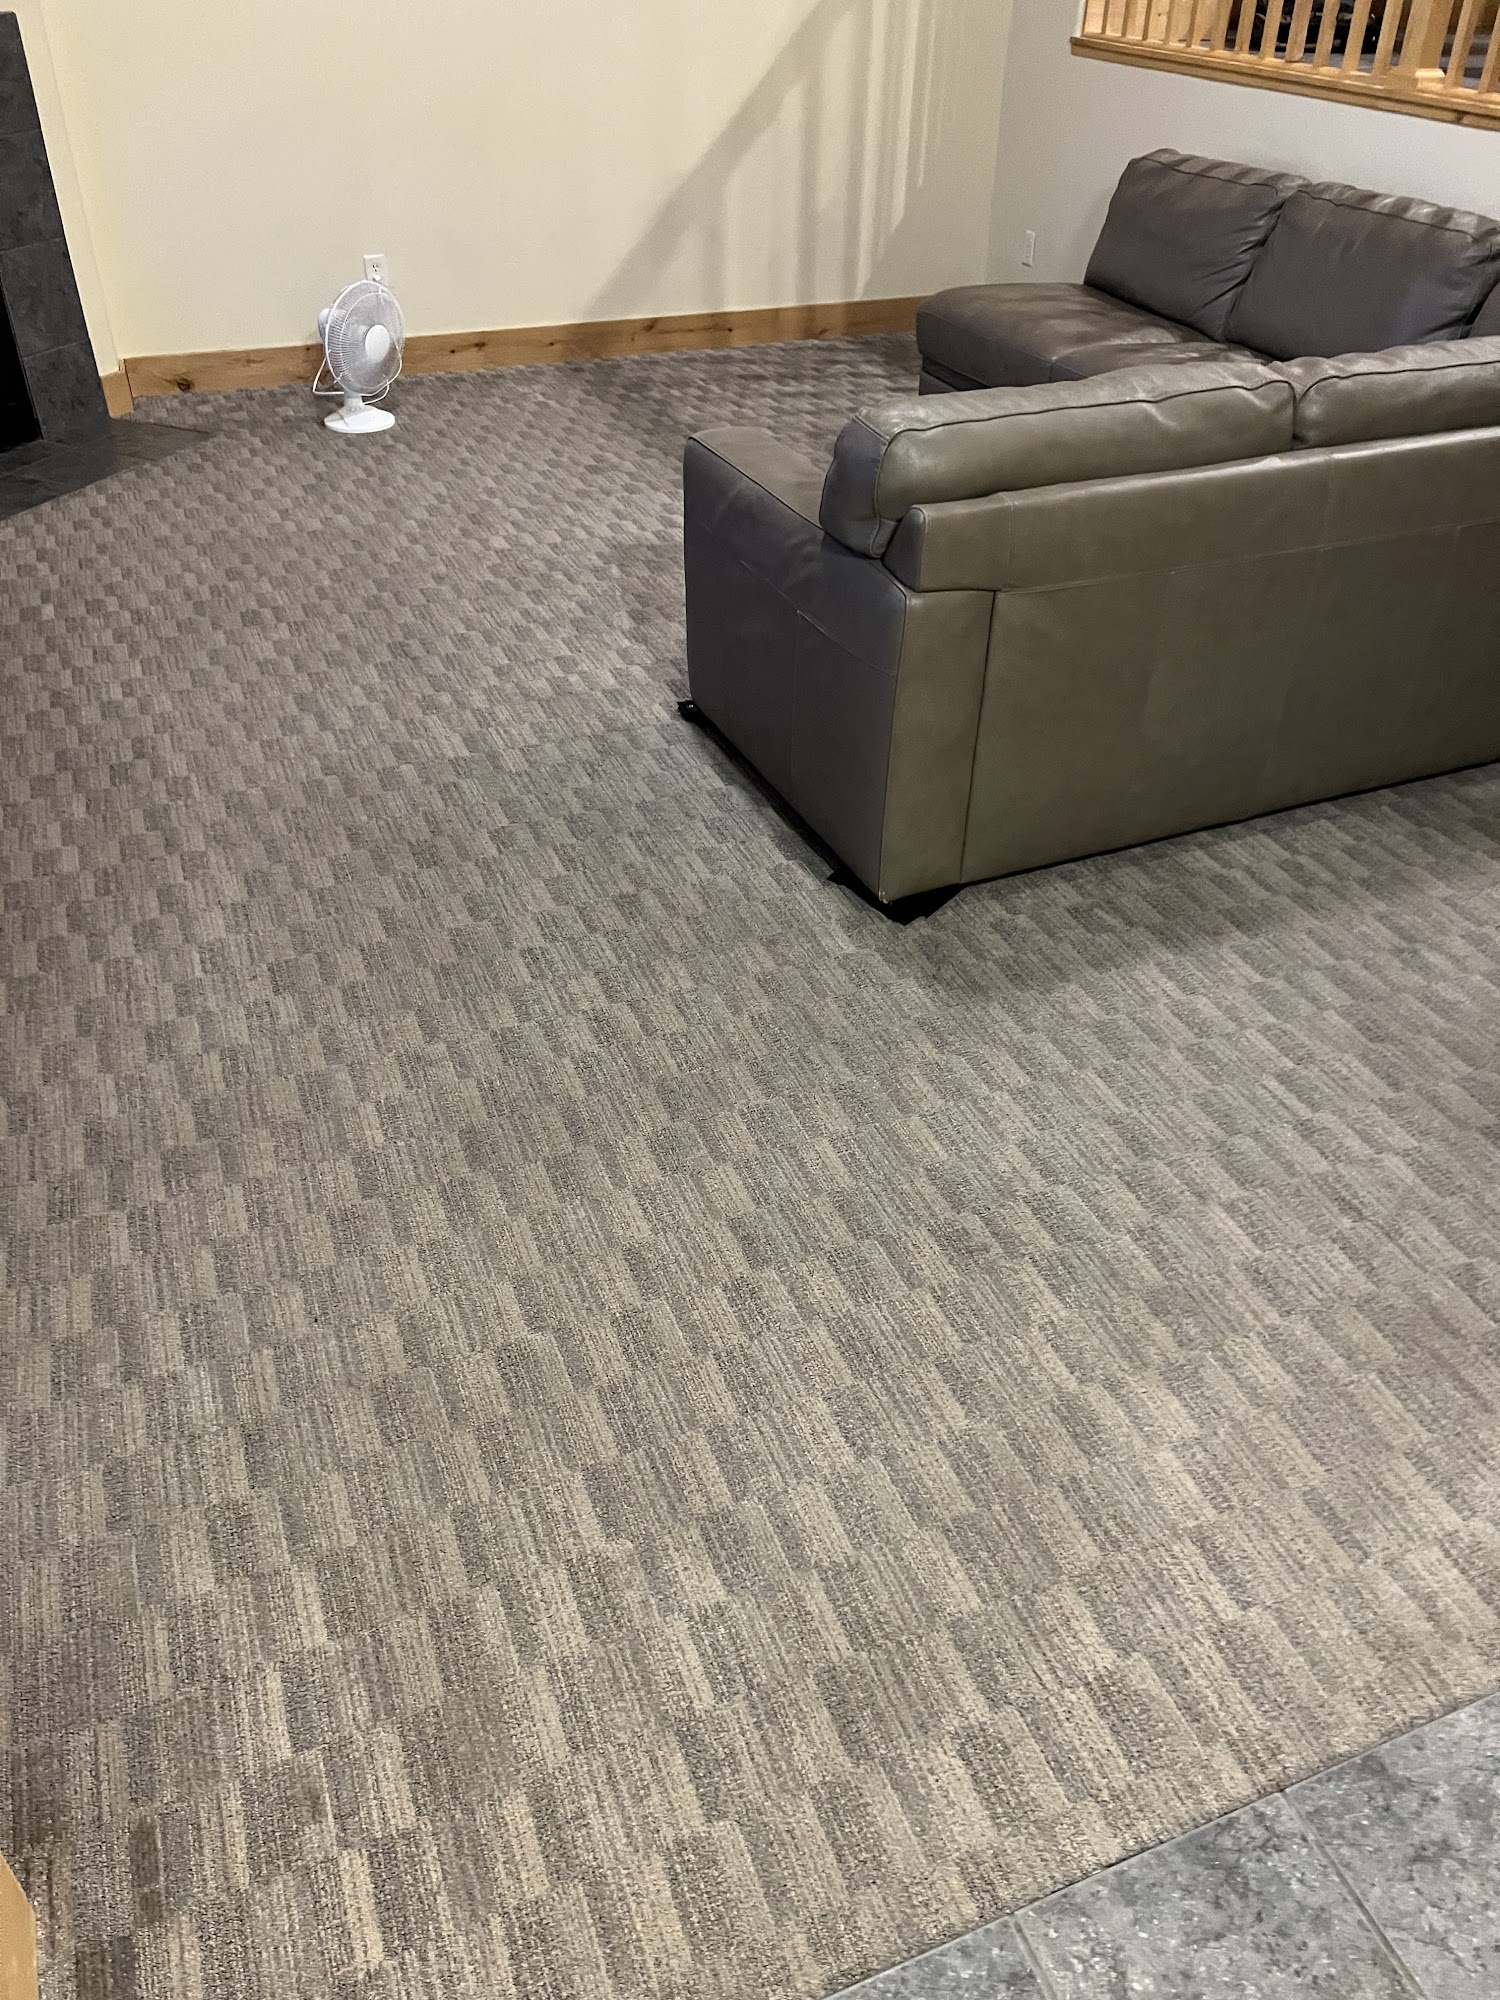 Edge Carpet Repair & Cleaning 561 W 1900 N, Farmington Utah 84025